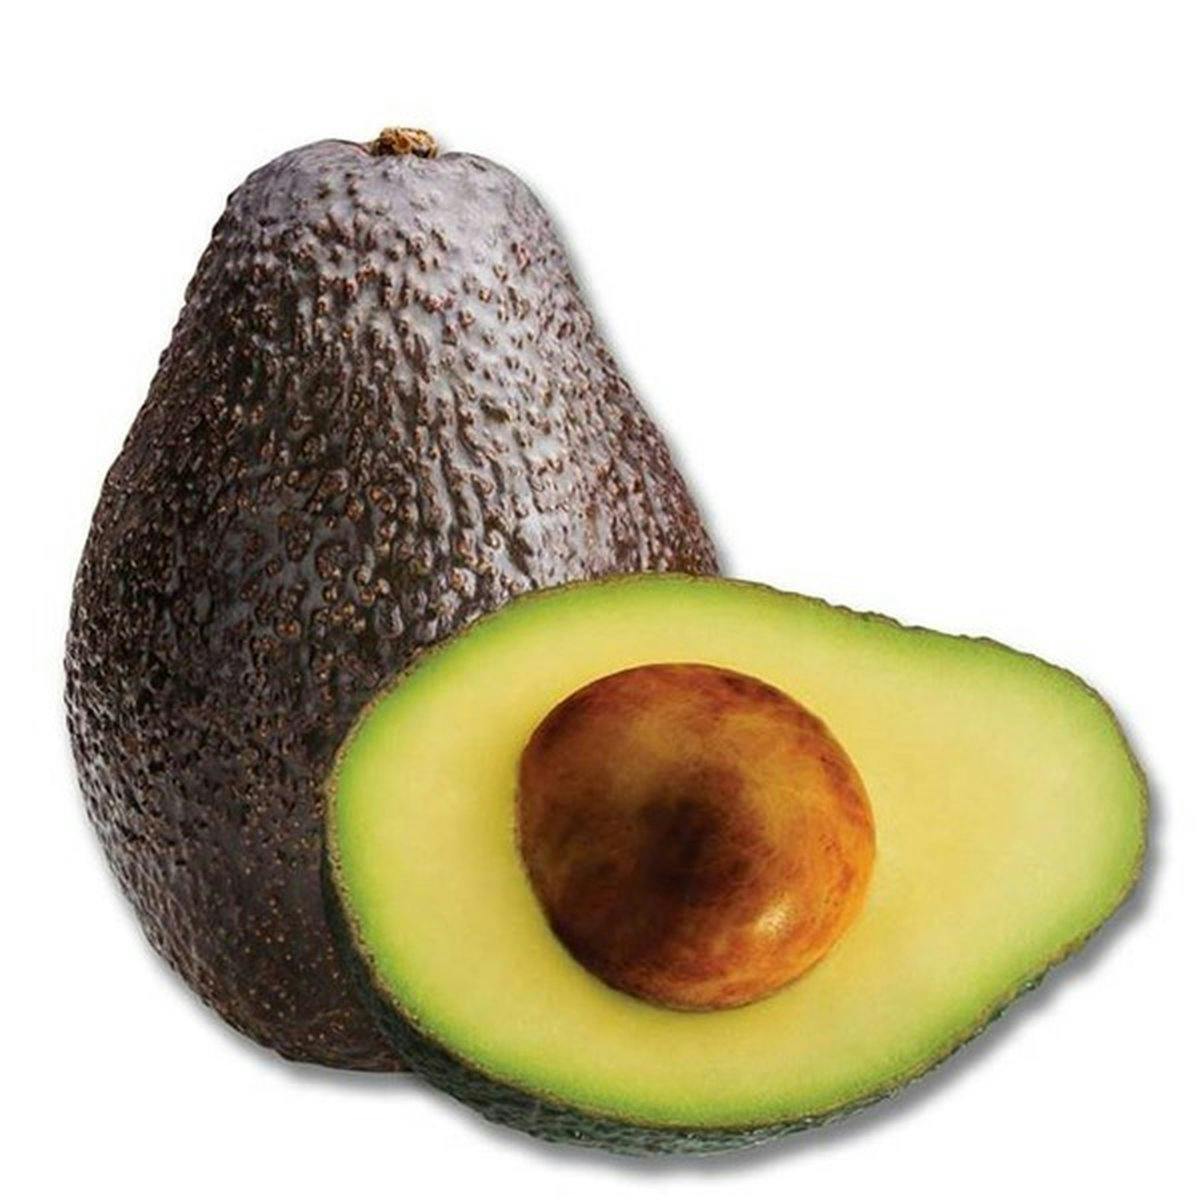 avocado for serving